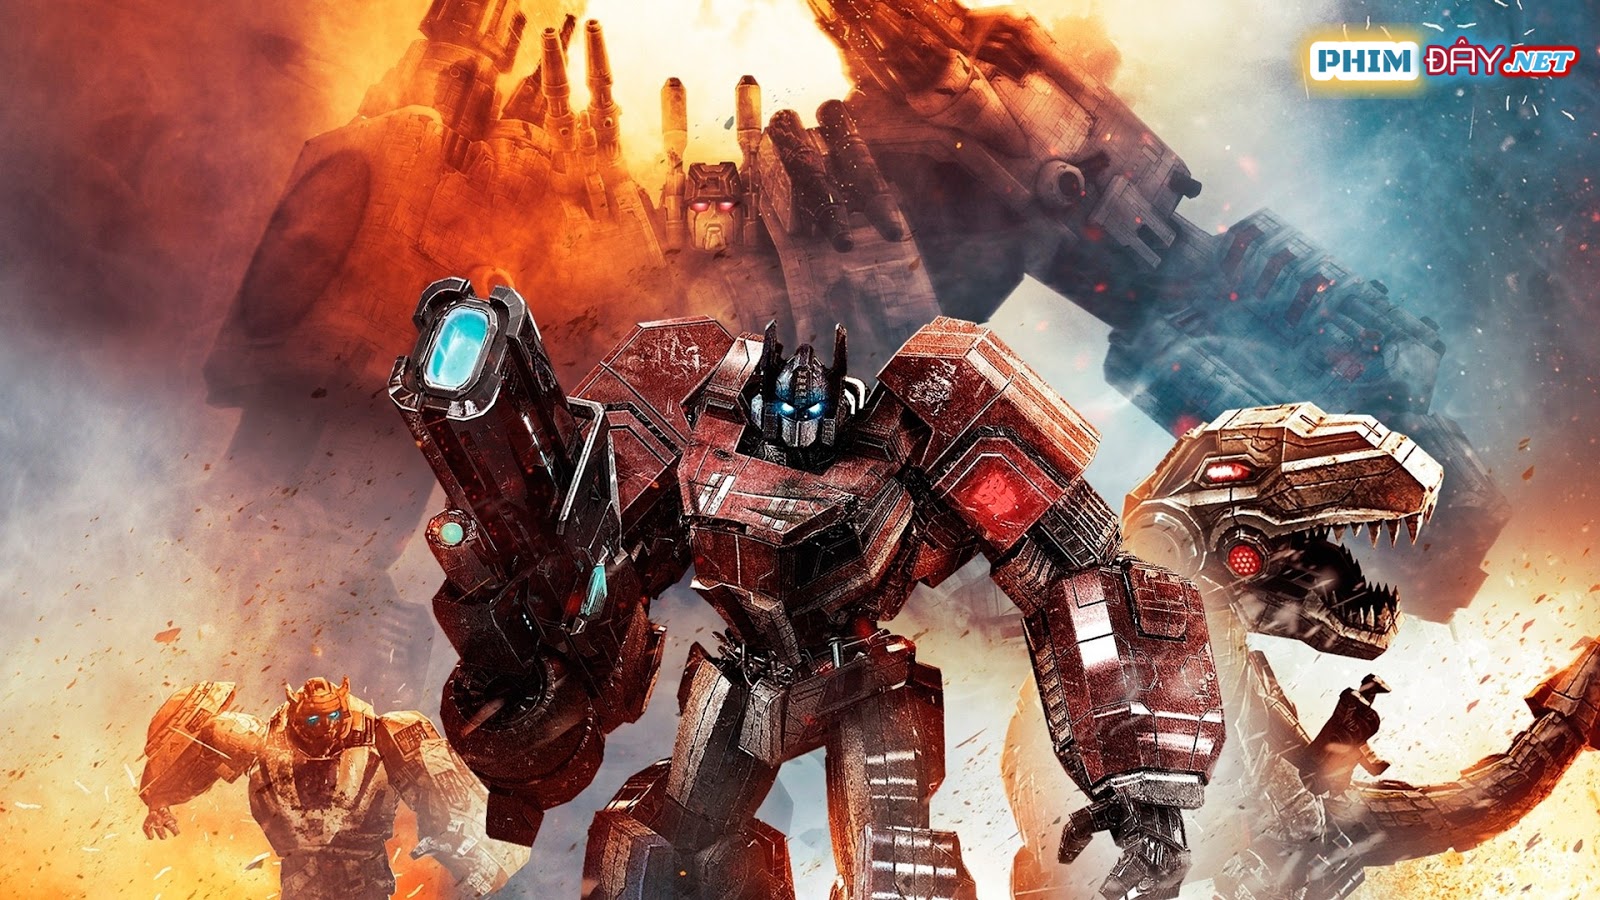 Robot Đại Chiến 4: Kỷ Nguyên Hủy Diệt - Transformers 4: Age of Extinction (2014)